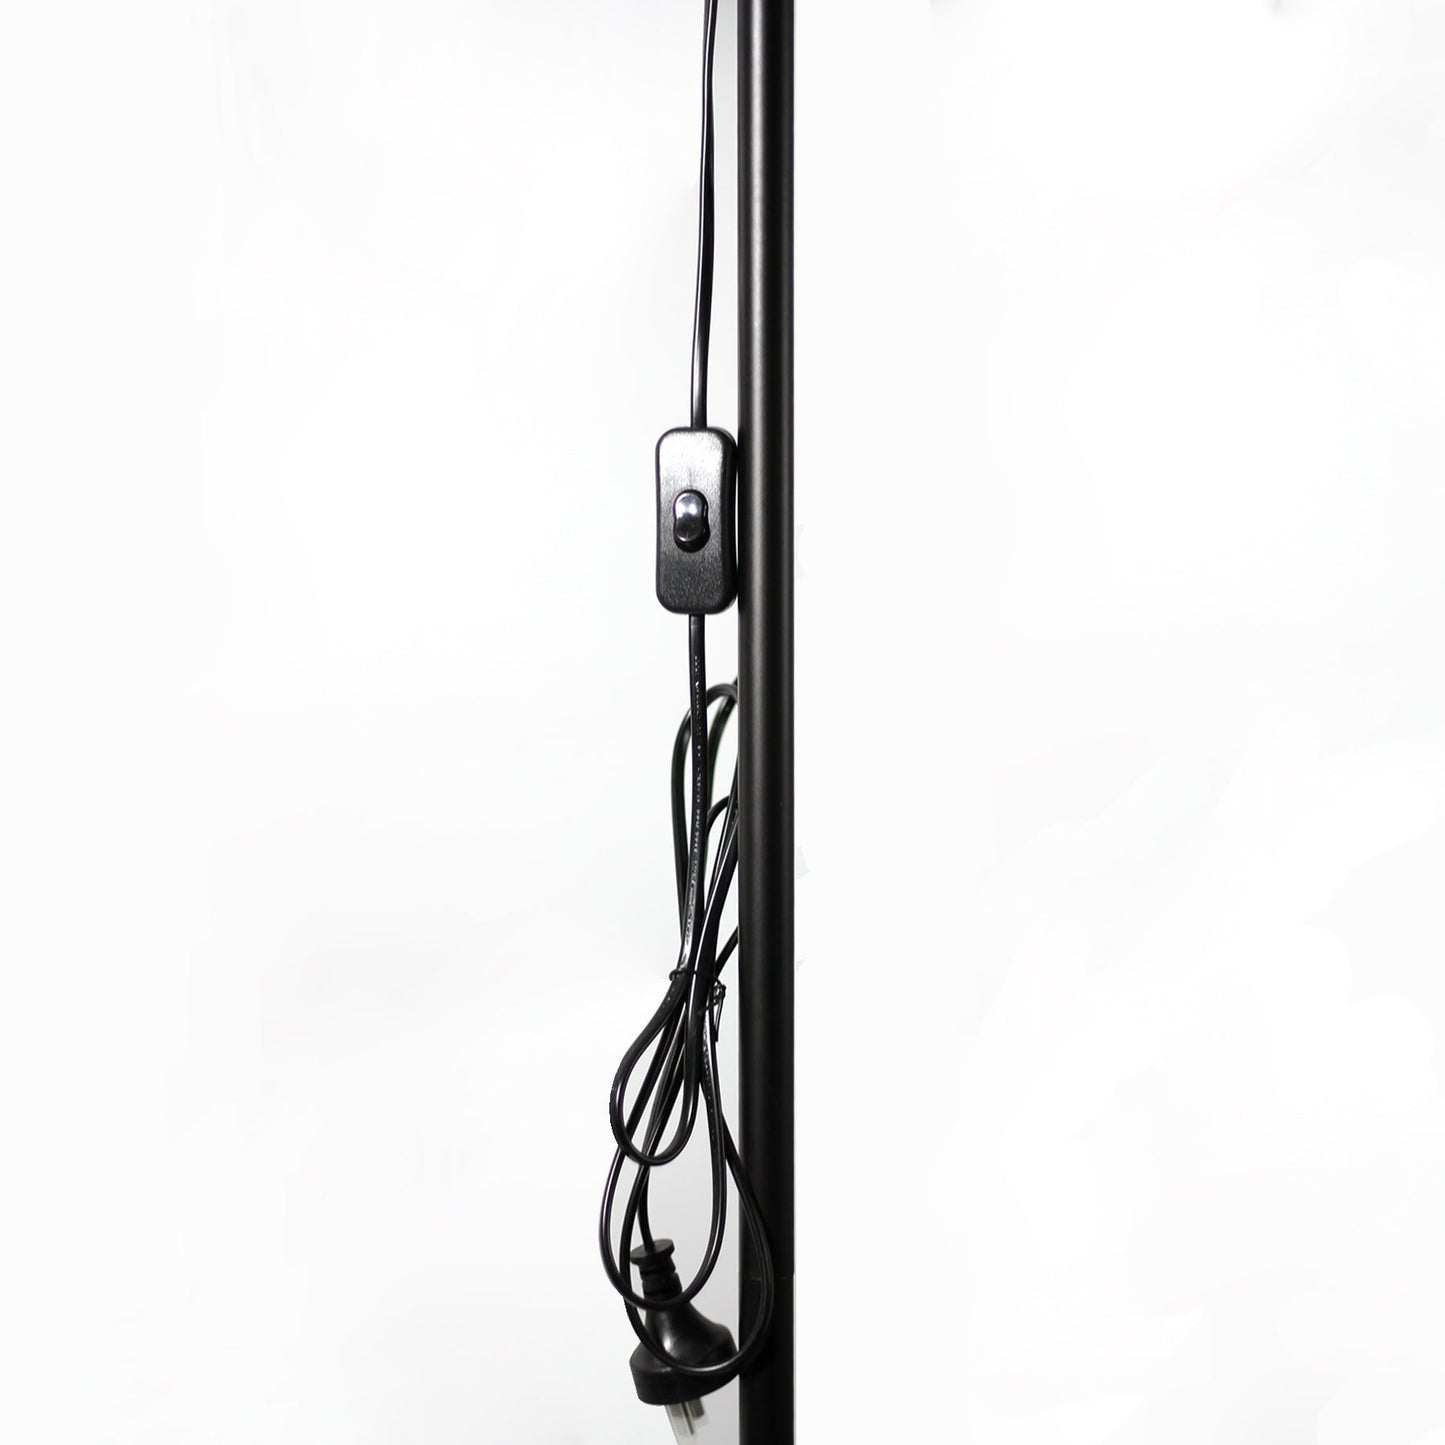 158cm Metal Floor Lamp - Black